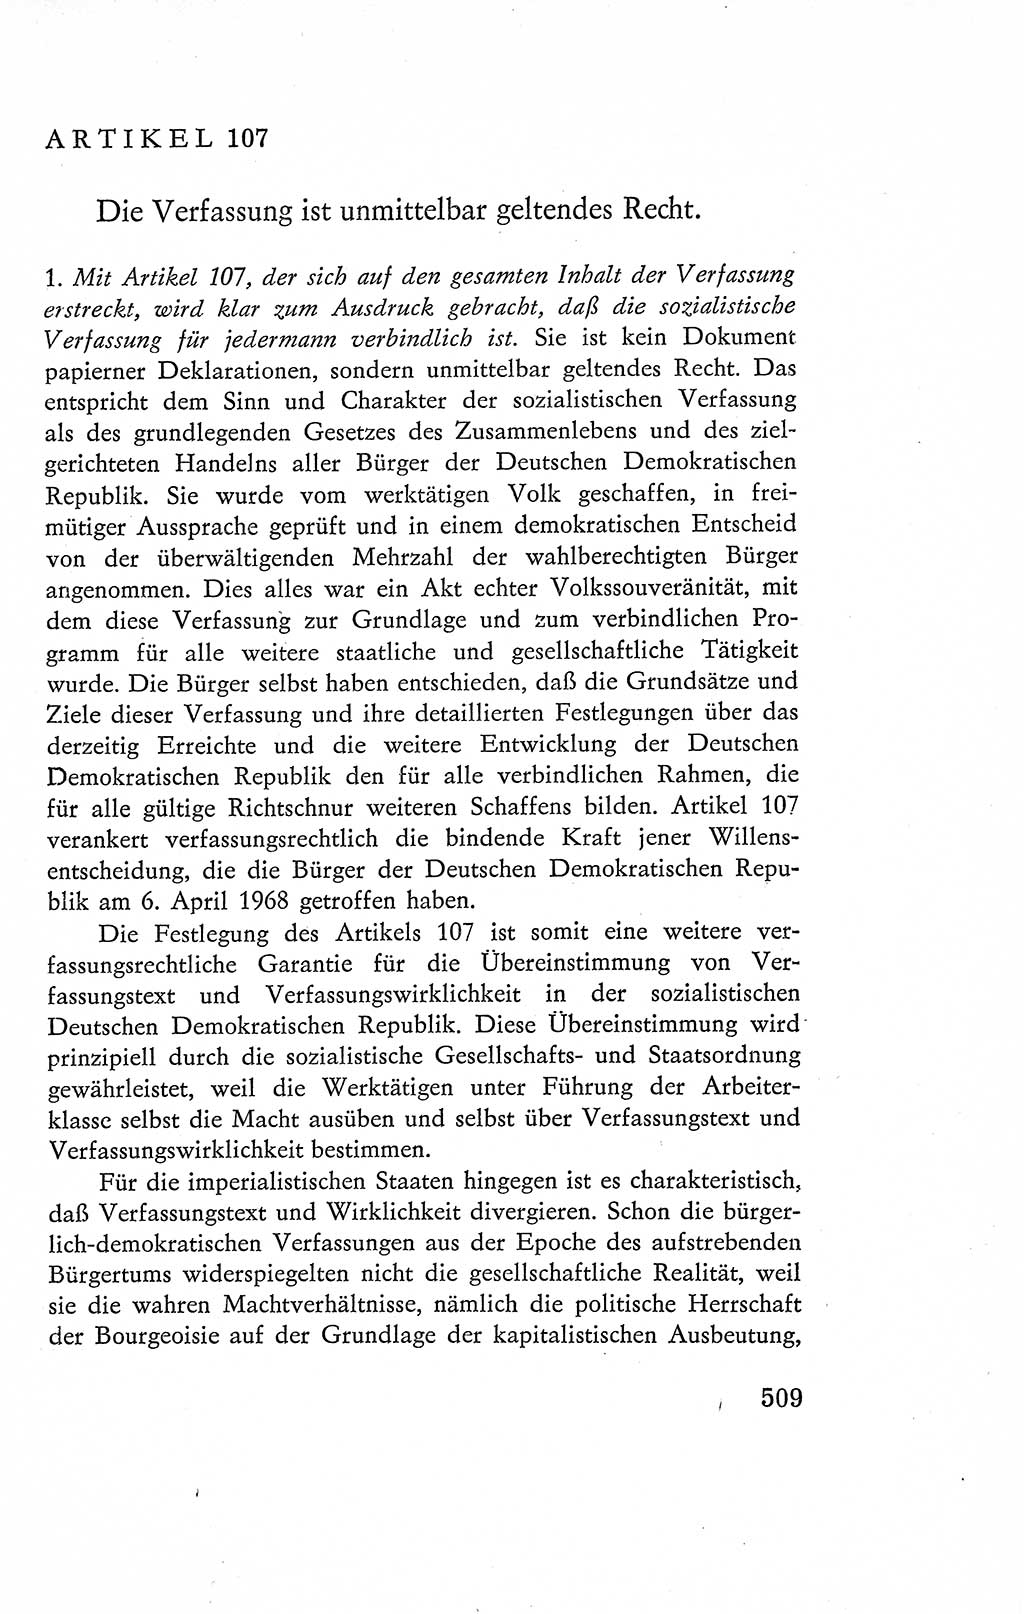 Verfassung der Deutschen Demokratischen Republik (DDR), Dokumente, Kommentar 1969, Band 2, Seite 509 (Verf. DDR Dok. Komm. 1969, Bd. 2, S. 509)